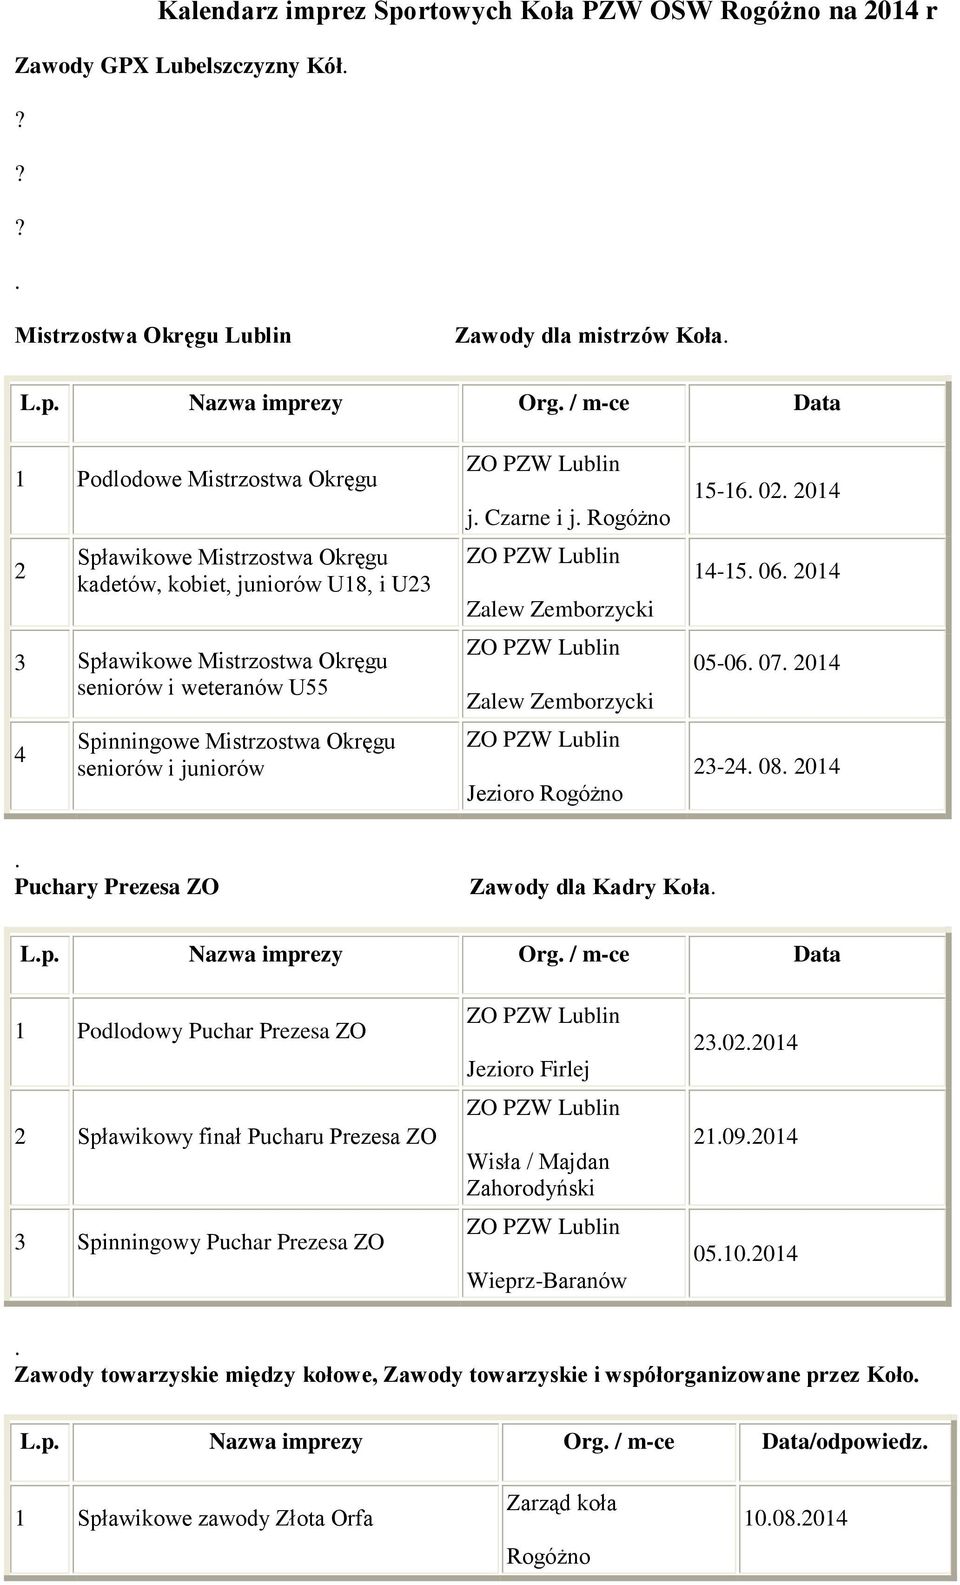 Okręgu seniorów i juniorów ZO PZW Lublin j. Czarne i j. ZO PZW Lublin Zalew Zemborzycki ZO PZW Lublin Zalew Zemborzycki ZO PZW Lublin Jezioro 15-16. 02. 2014 14-15. 06. 2014 05-06. 07. 2014 23-24. 08.